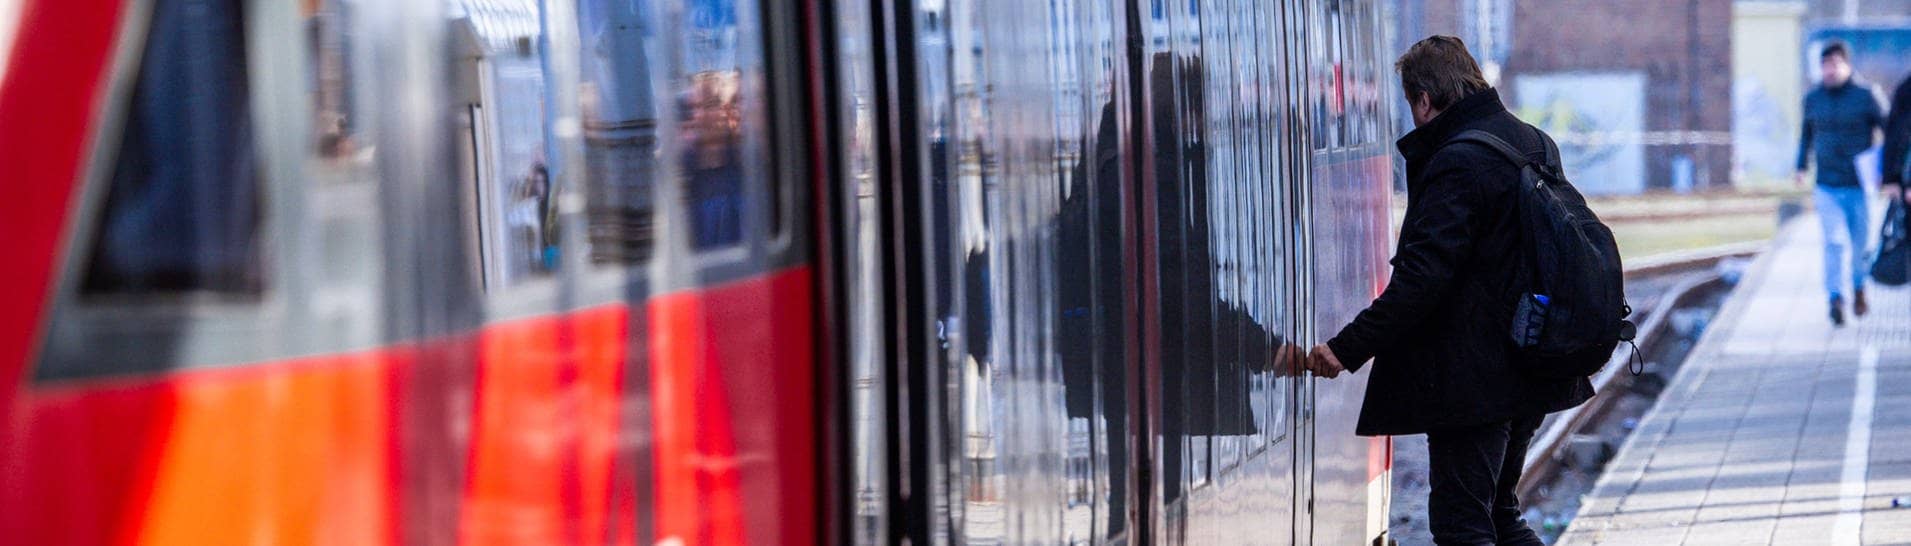 Ein Mann steigt im Bahnhof in eine Regionalbahn ein. – Die GDL hat den aktuellen Bahn-Streik früher beendet als geplant. Am Montagmorgen sollen wieder Züge fahren. (Foto: dpa Bildfunk, picture alliance/dpa | Jens Büttner)